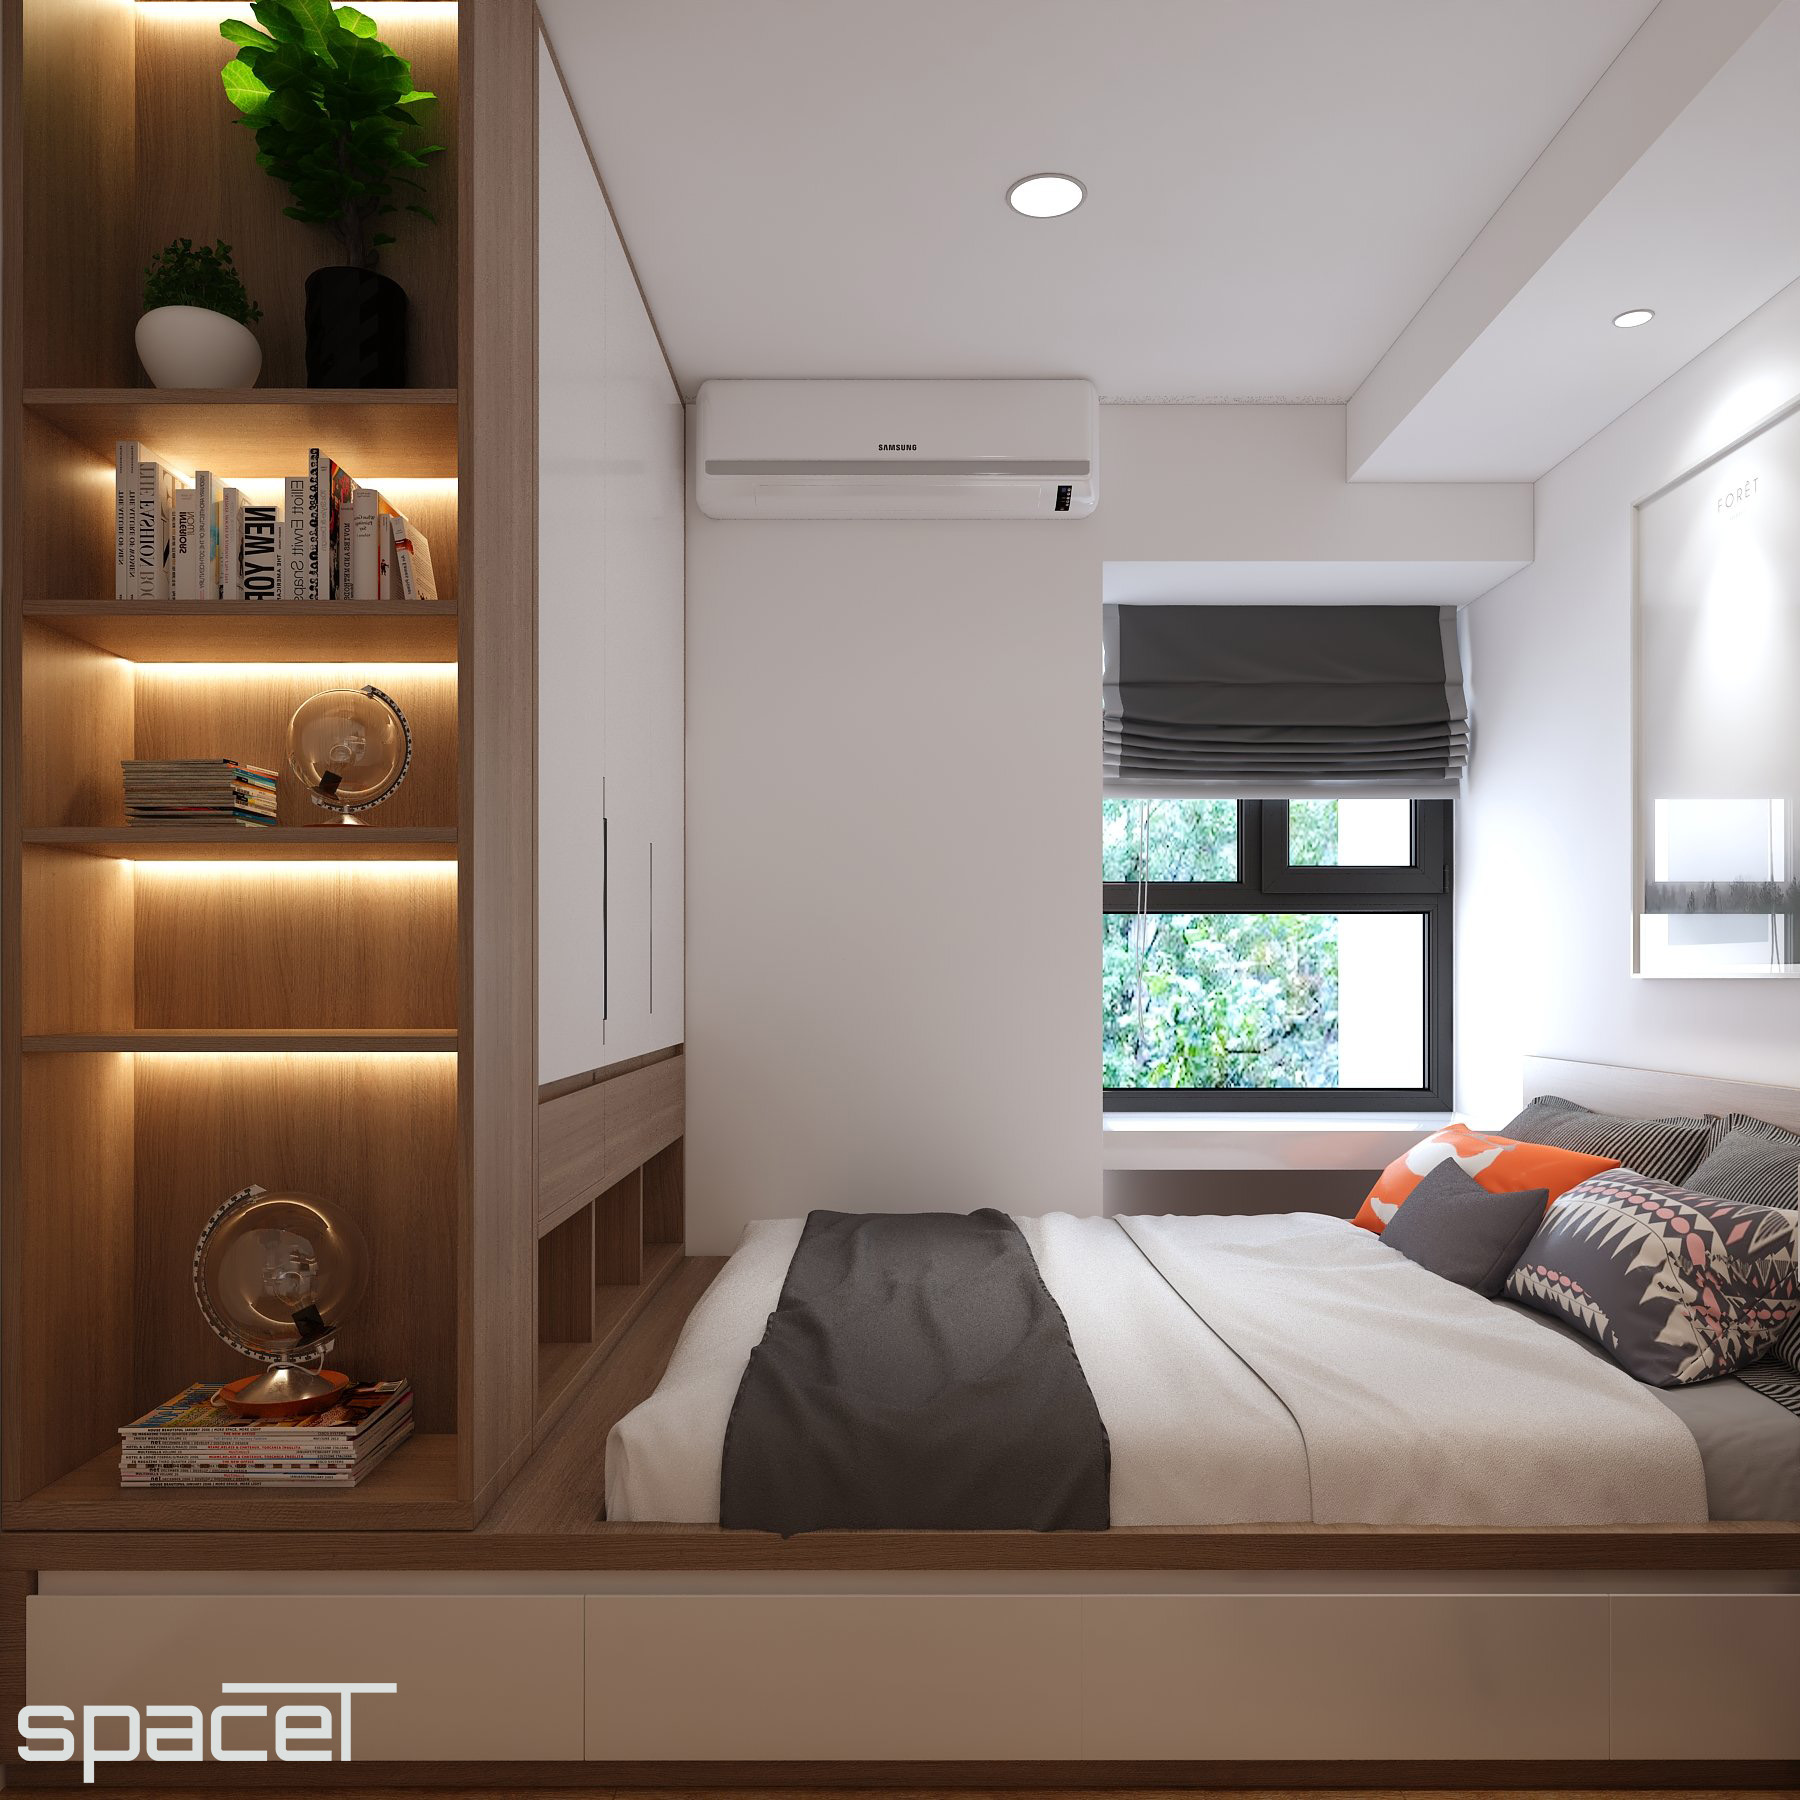 Phòng ngủ, phong cách Hiện đại Modern, thiết kế concept nội thất, căn hộ chung cư Ricca